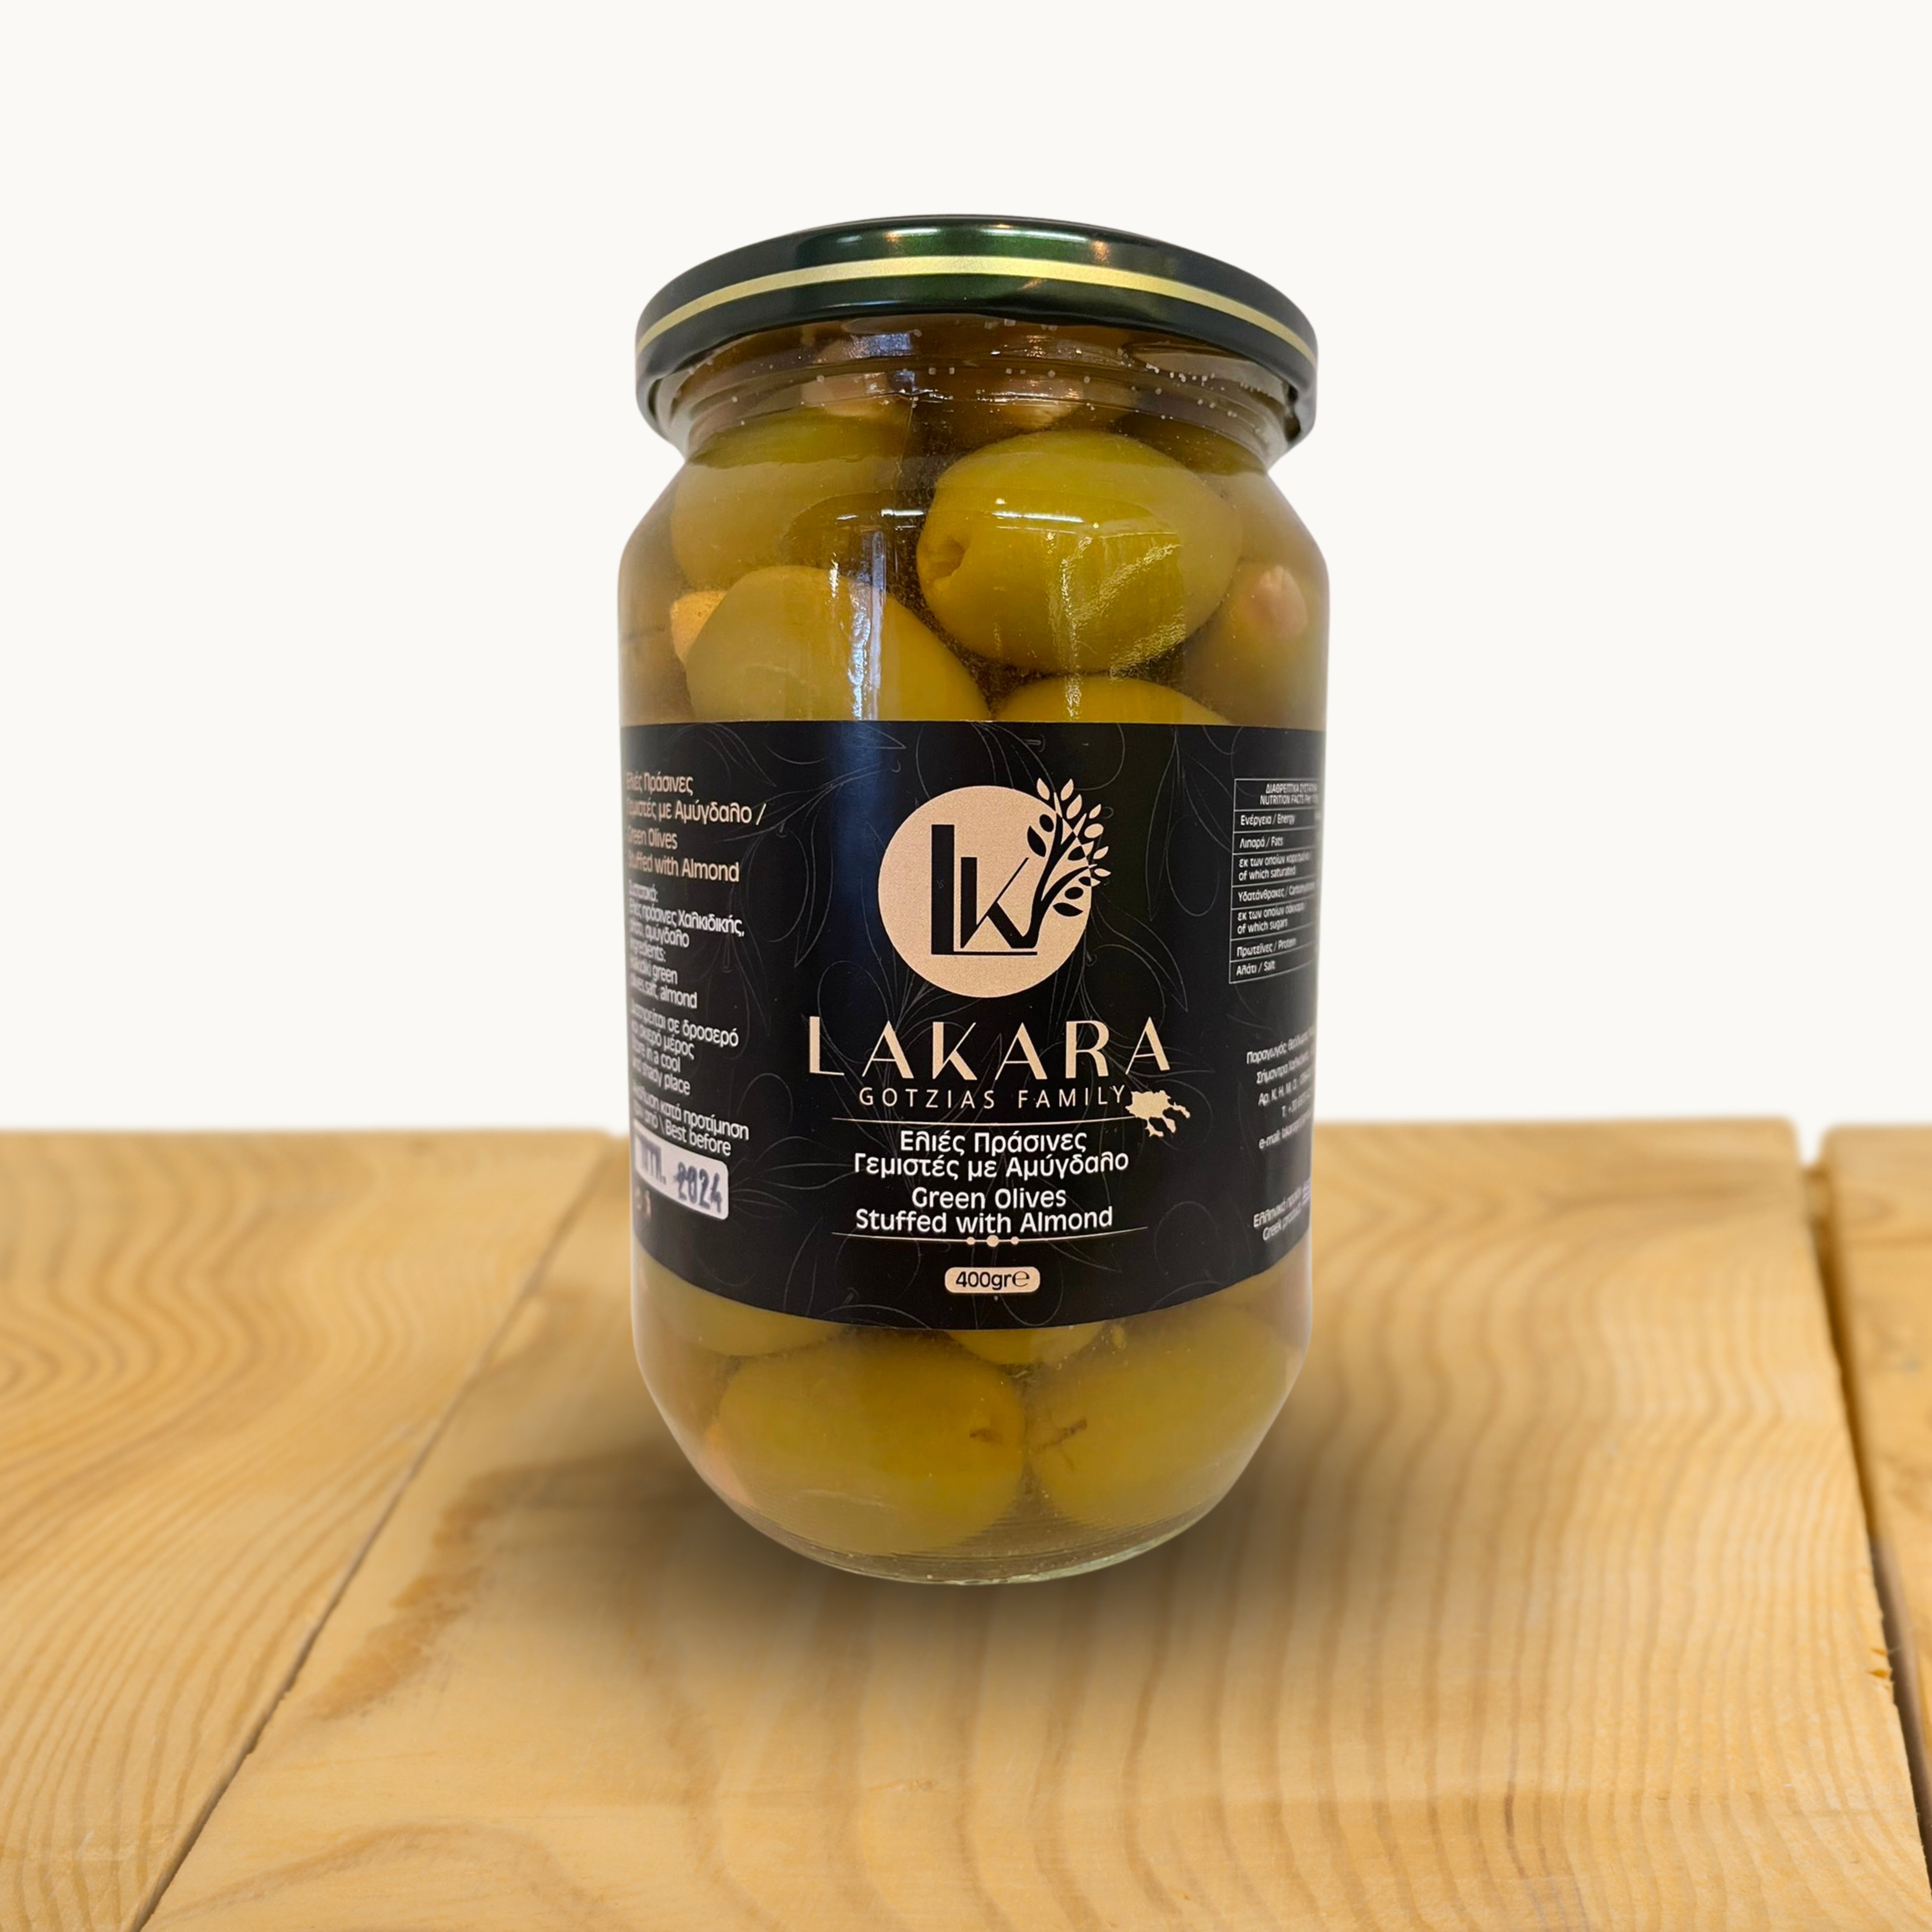 LAKARA Grüne Oliven gefüllt mit Mandeln, in Lake, 420gr. im Glas